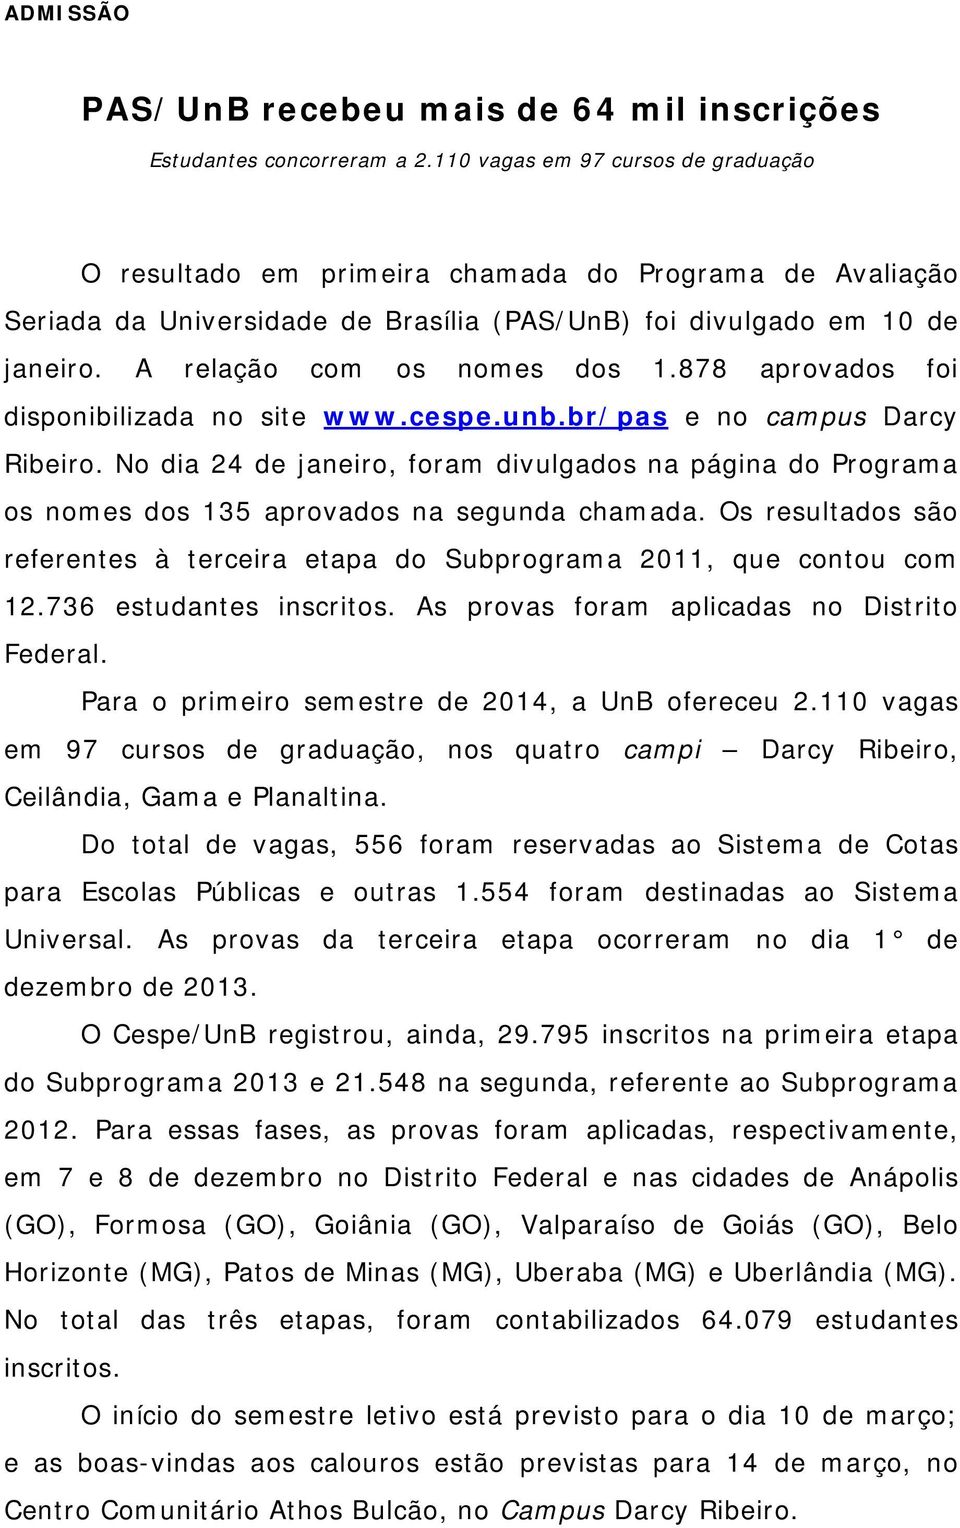 878 aprovados foi disponibilizada no site www.cespe.unb.br/pas e no campus Darcy Ribeiro. No dia 24 de janeiro, foram divulgados na página do Programa os nomes dos 135 aprovados na segunda chamada.